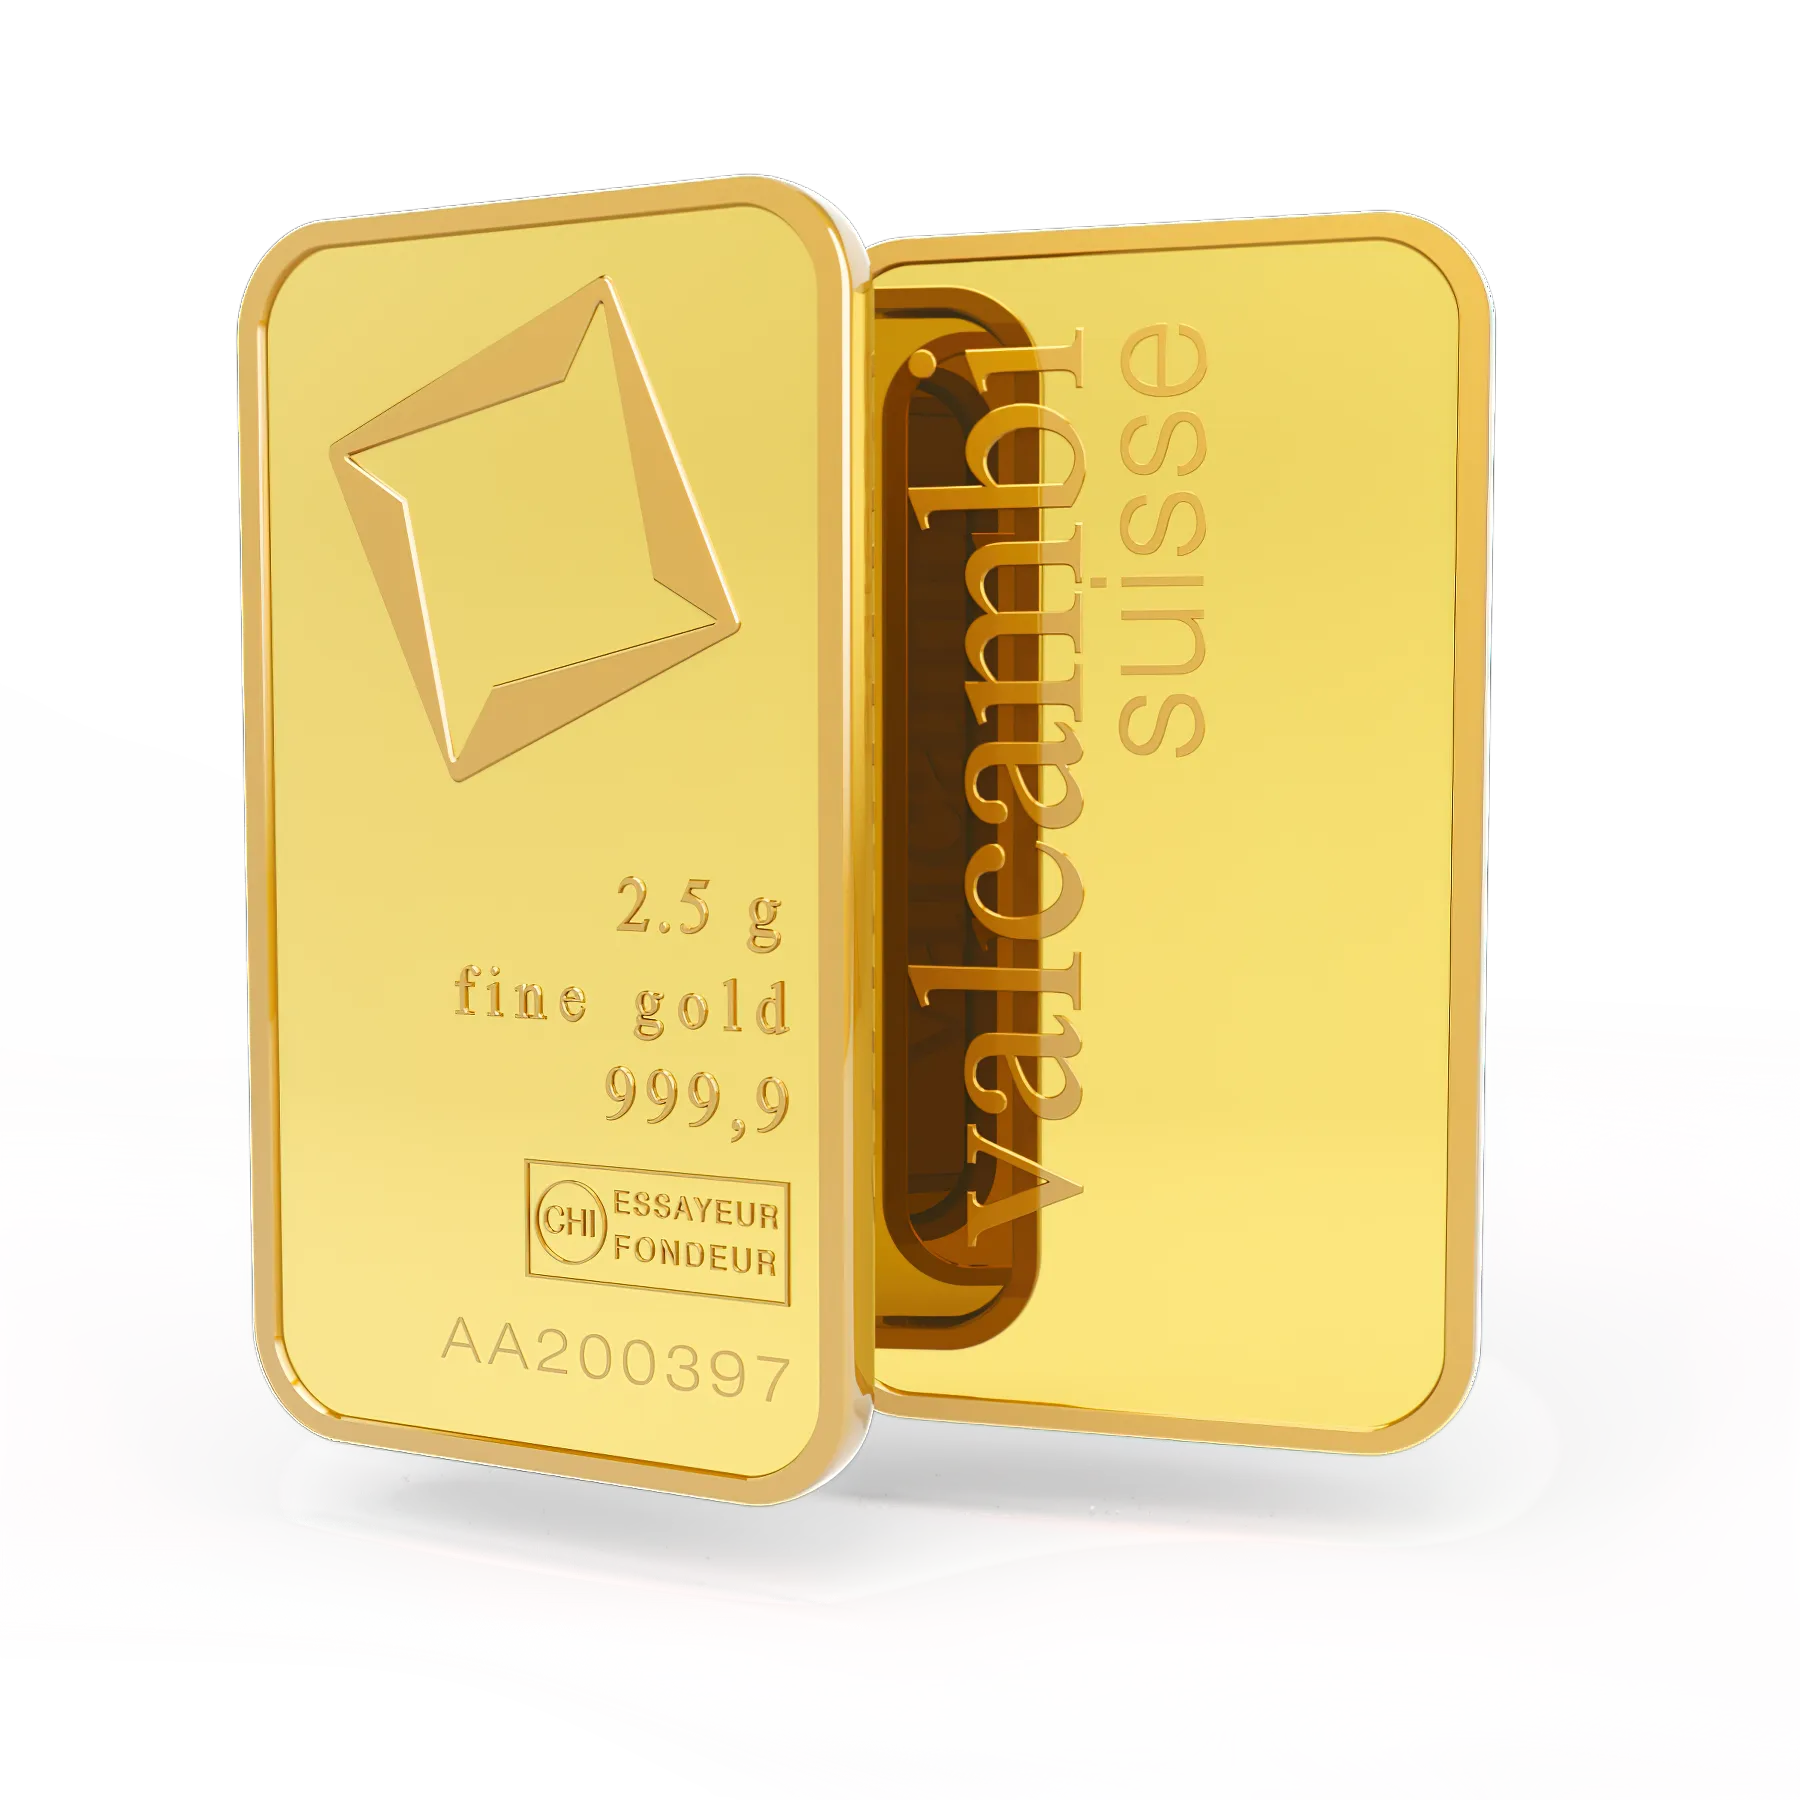 2.5g gold bar. Switzerland. Fine Gold. 999.9